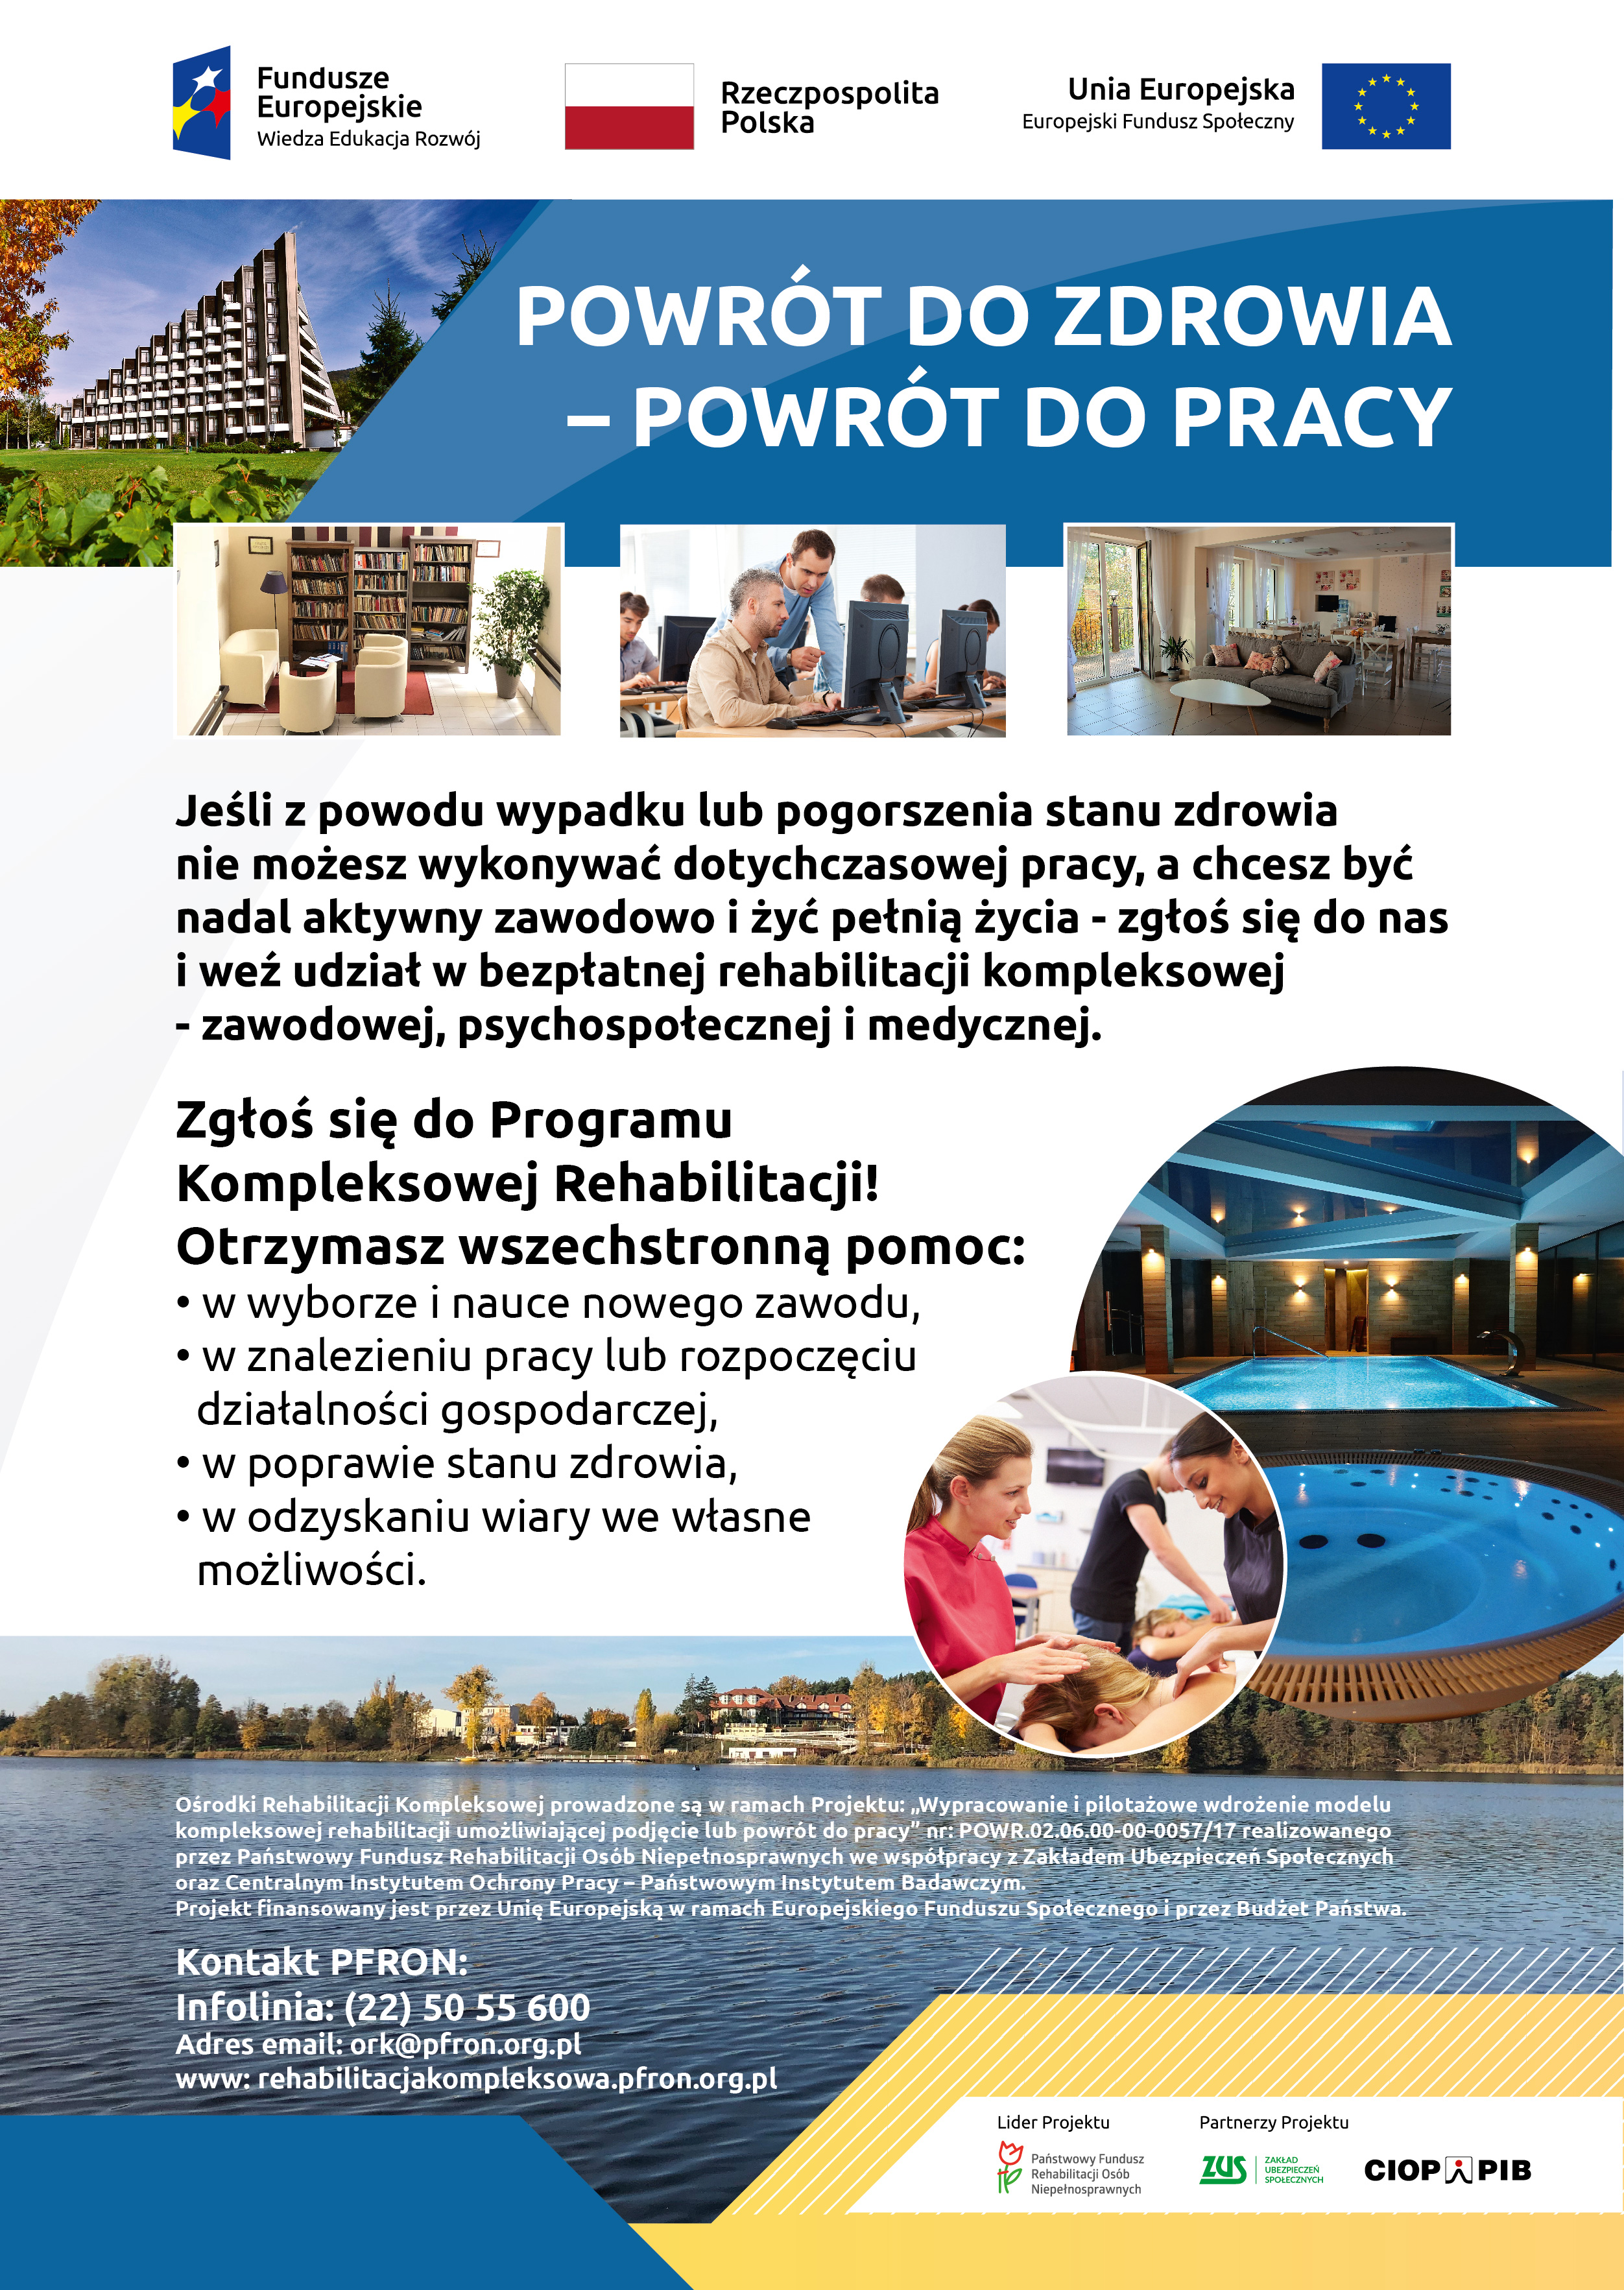 Plakat informacyjny PFRON dotyczący rekrutacji do projektu